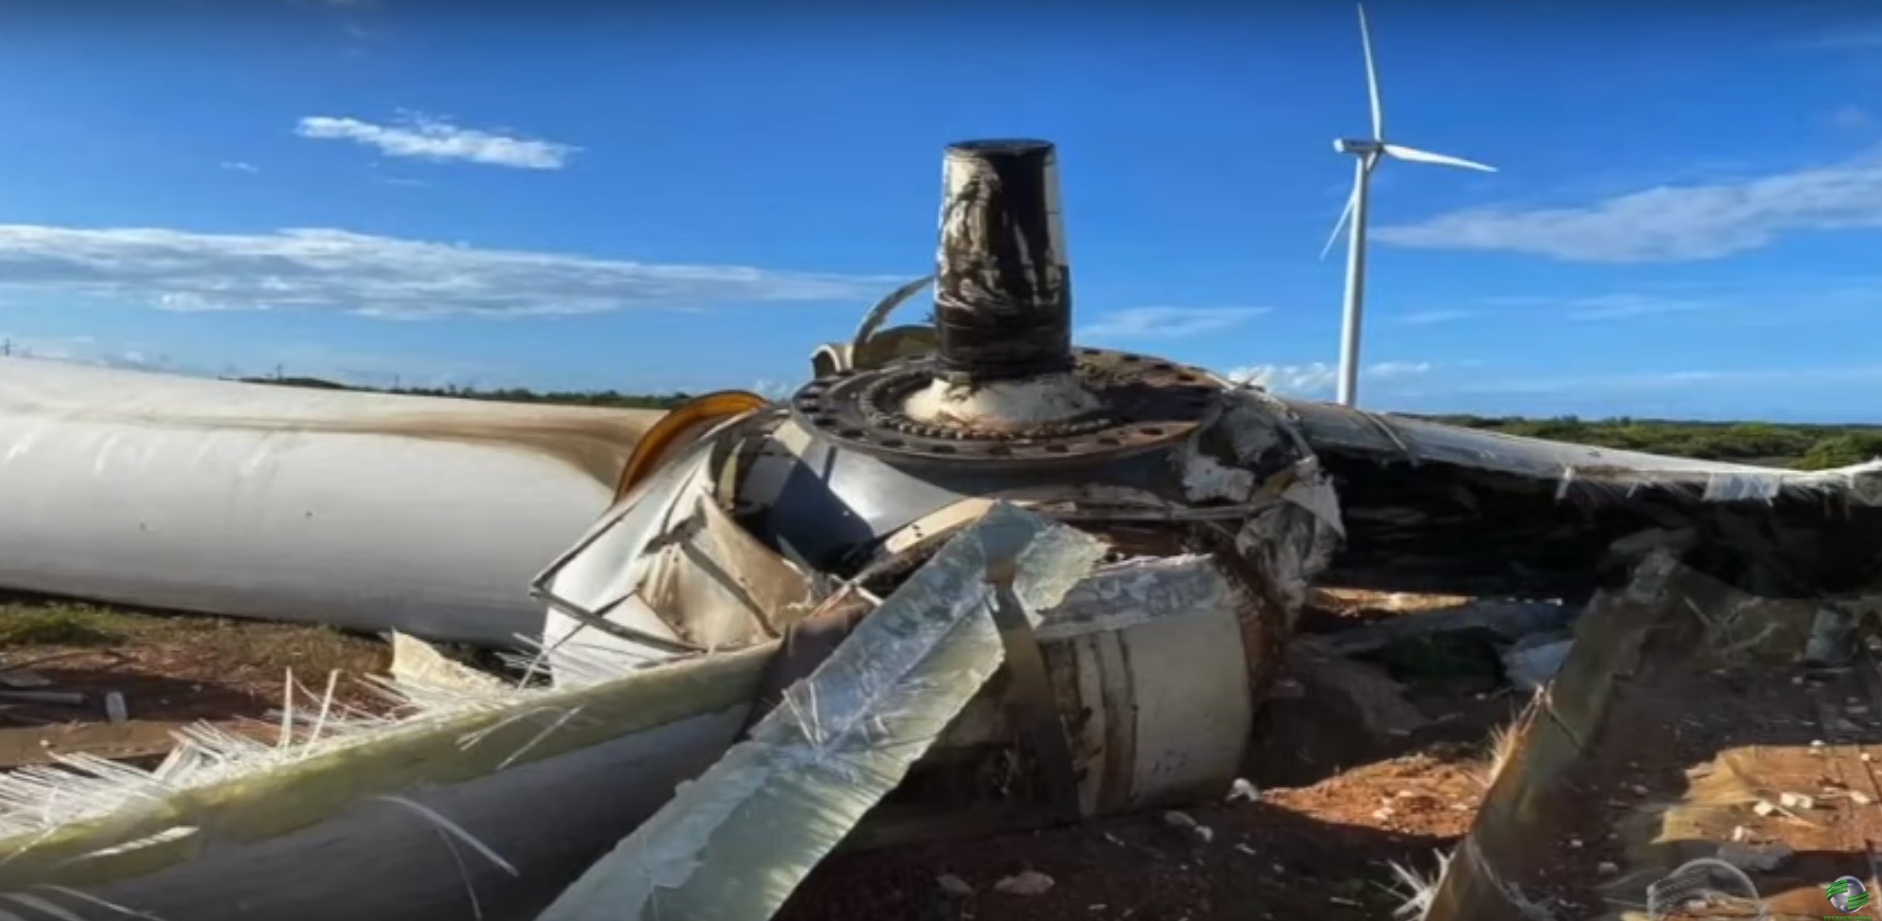 Hélice de torre eólica com mais de 20 metros desaba no litoral do Piauí